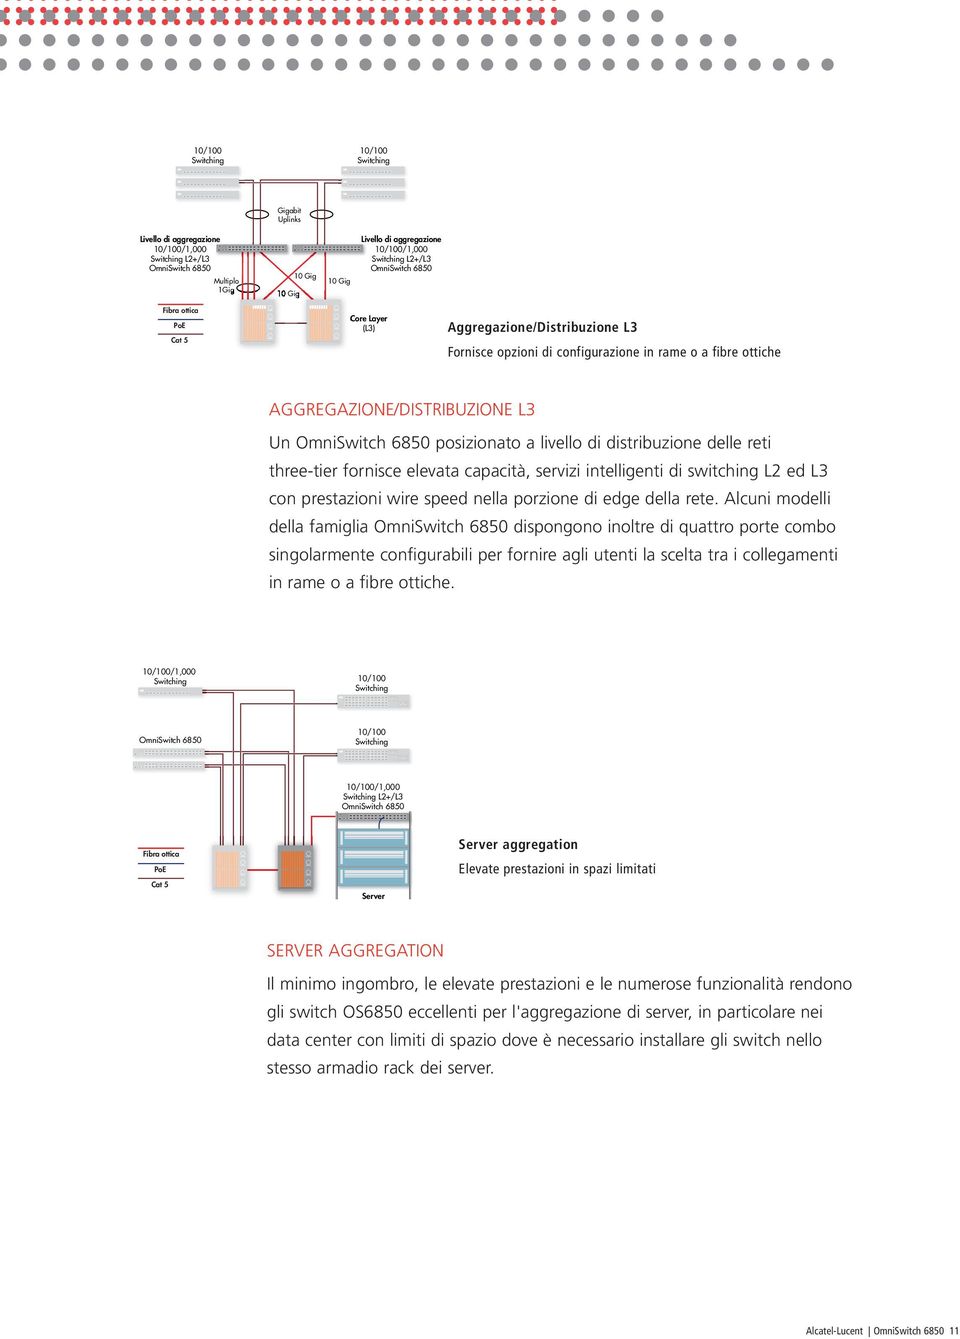 OmniSwitch 6850 posizionato a livello di distribuzione delle reti three-tier fornisce elevata capacità, servizi intelligenti di switching L2 ed L3 con prestazioni wire speed nella porzione di edge